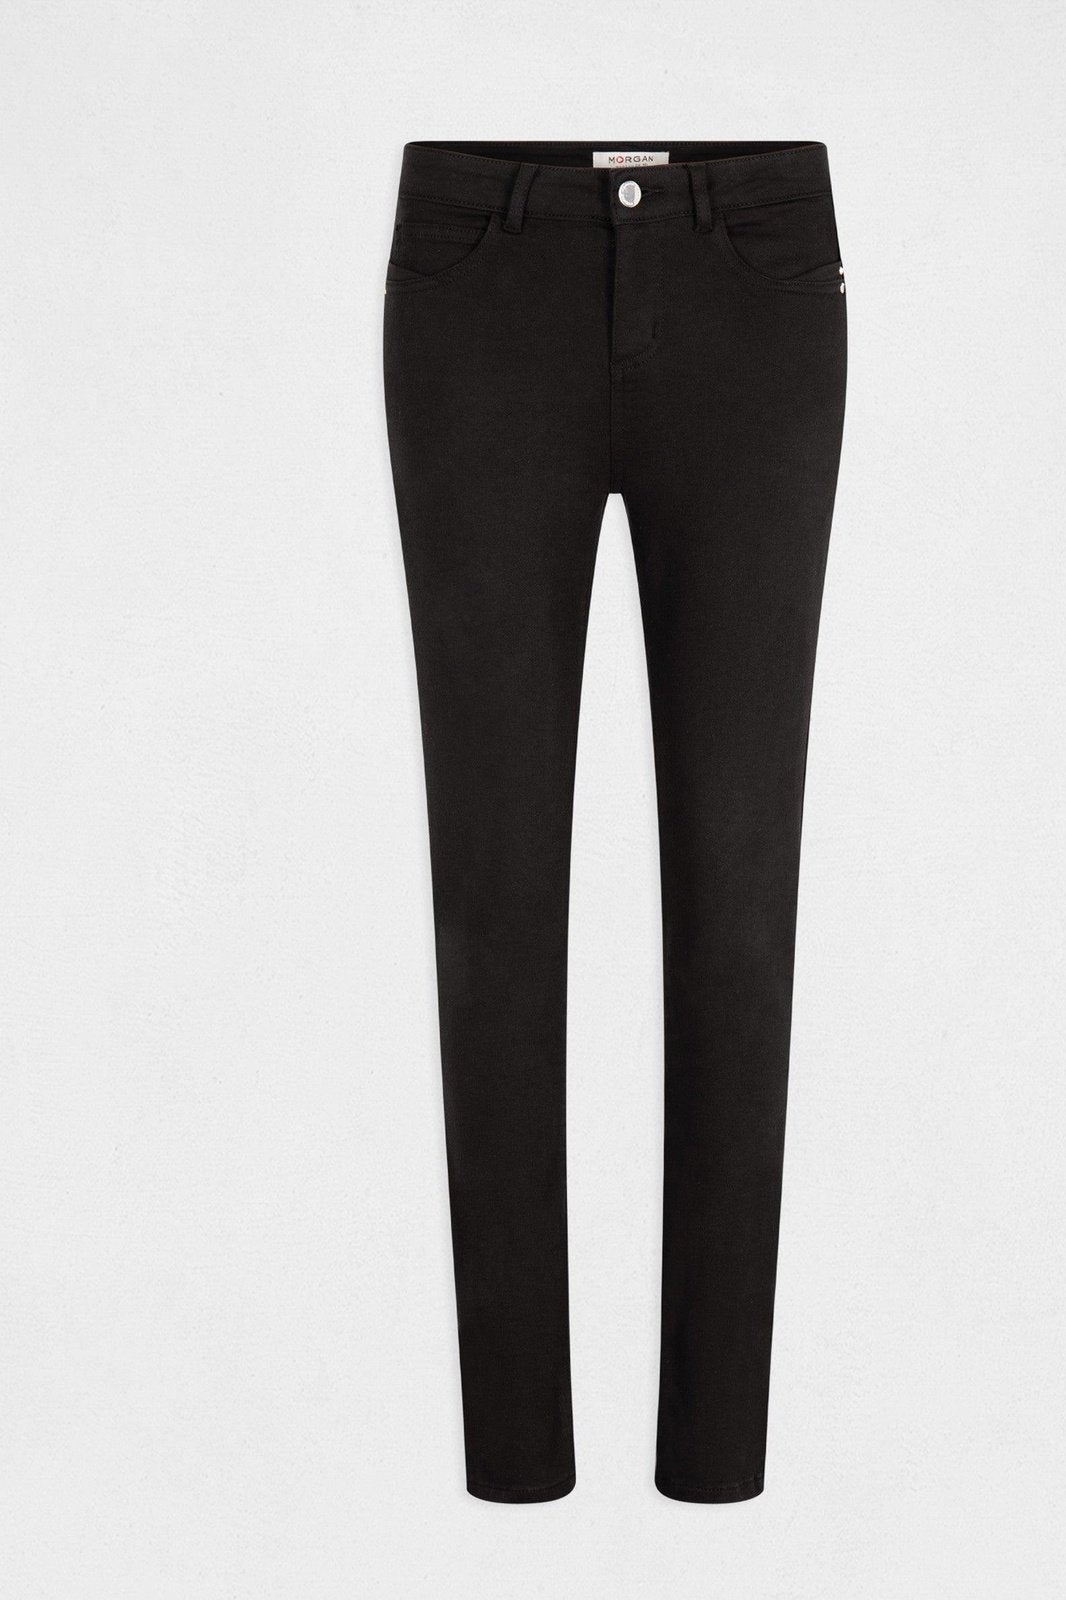 ג'ינס גזרה נמוכה בצבע שחור - MASHBIR//365